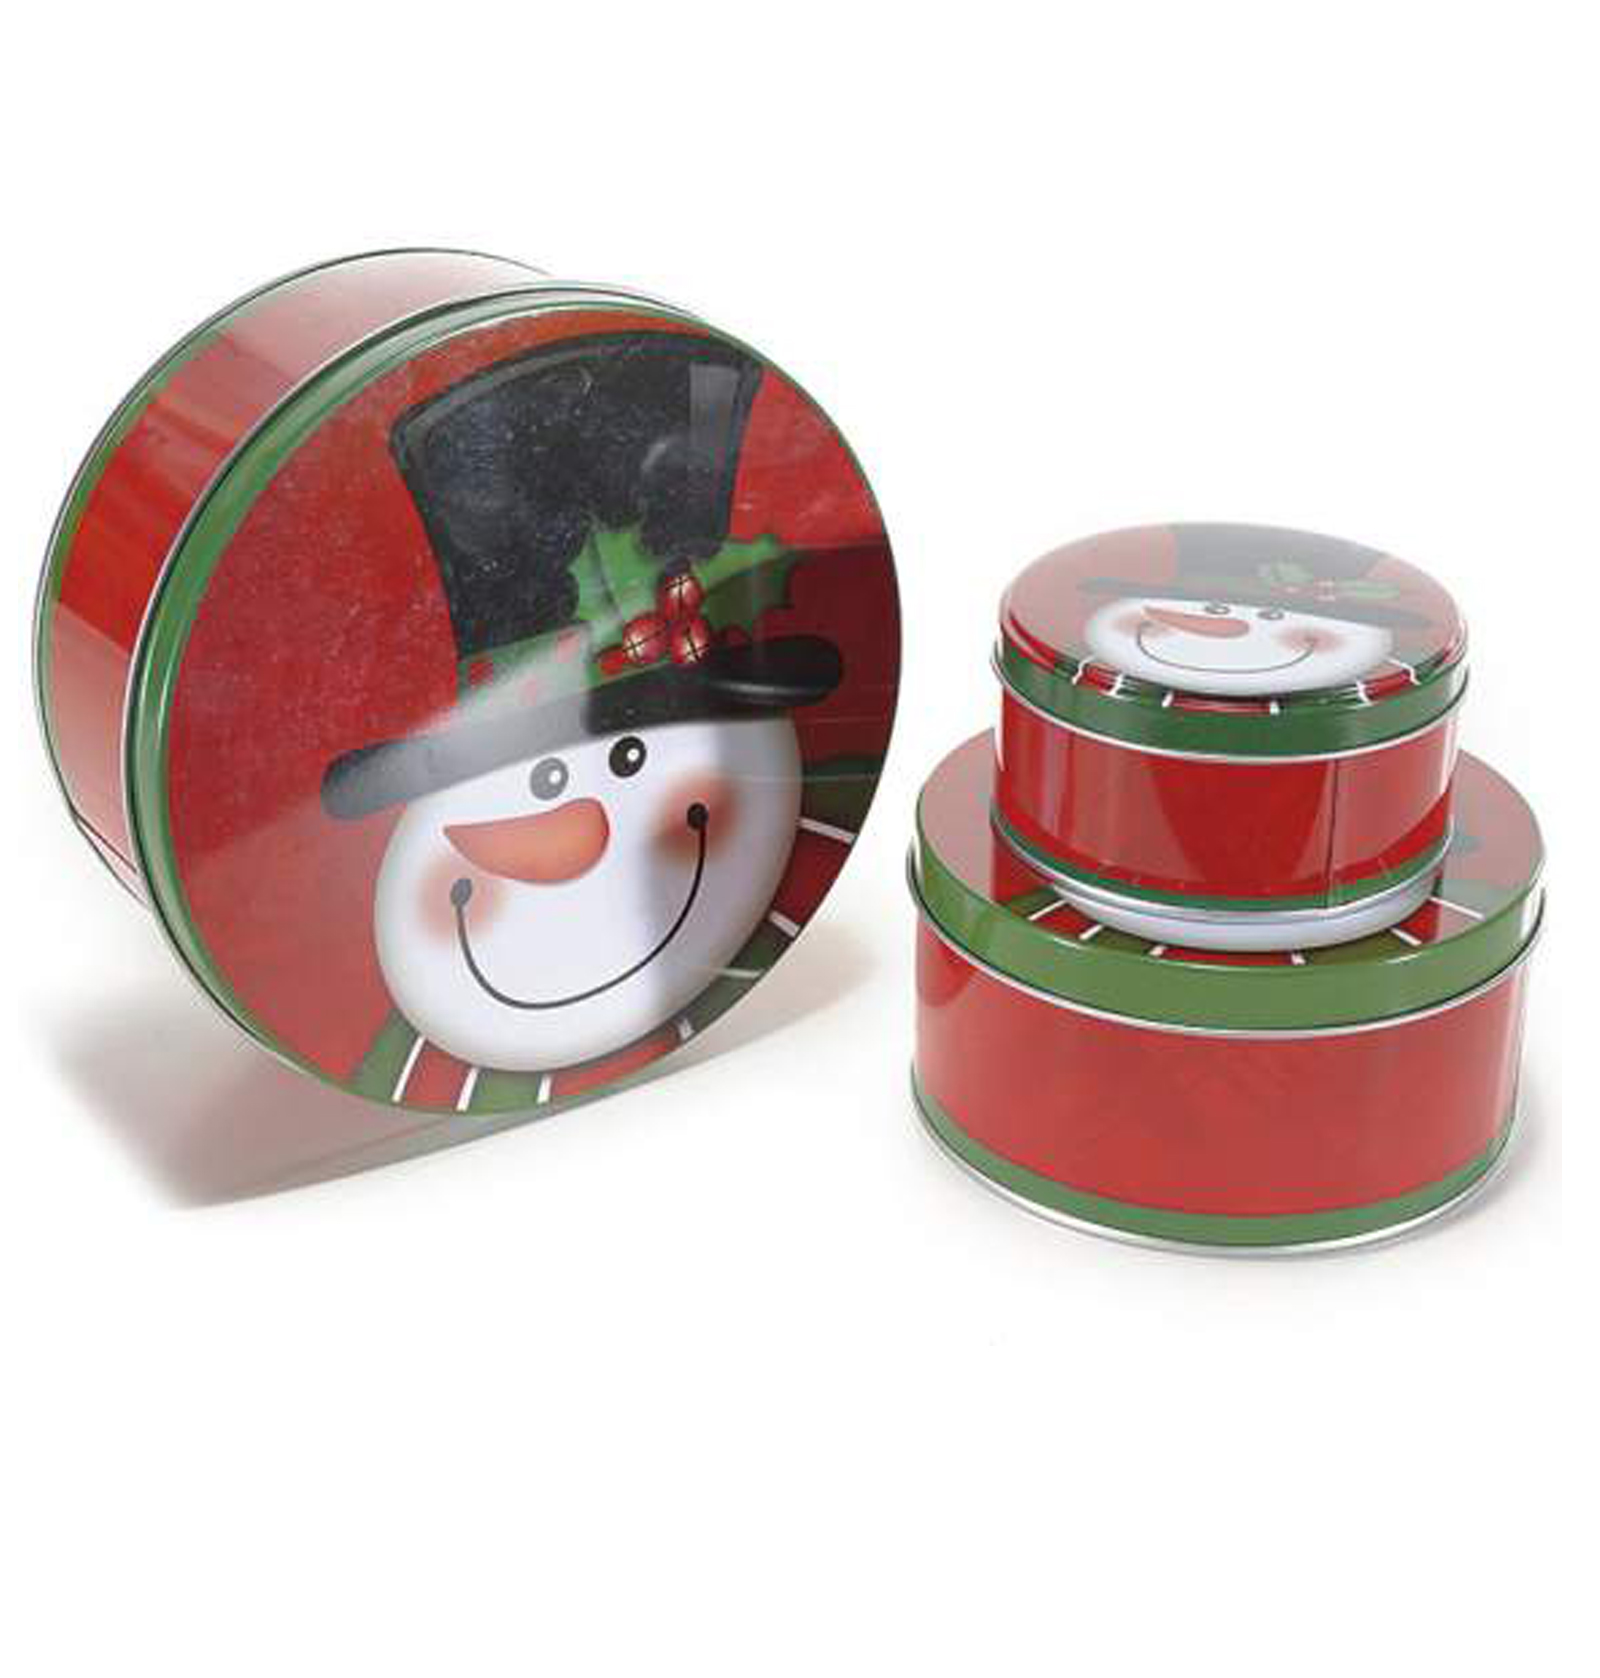 Scatole natalizie decorative tonde in metallo con decorazione pupazzo di neve in set da 3 pz.